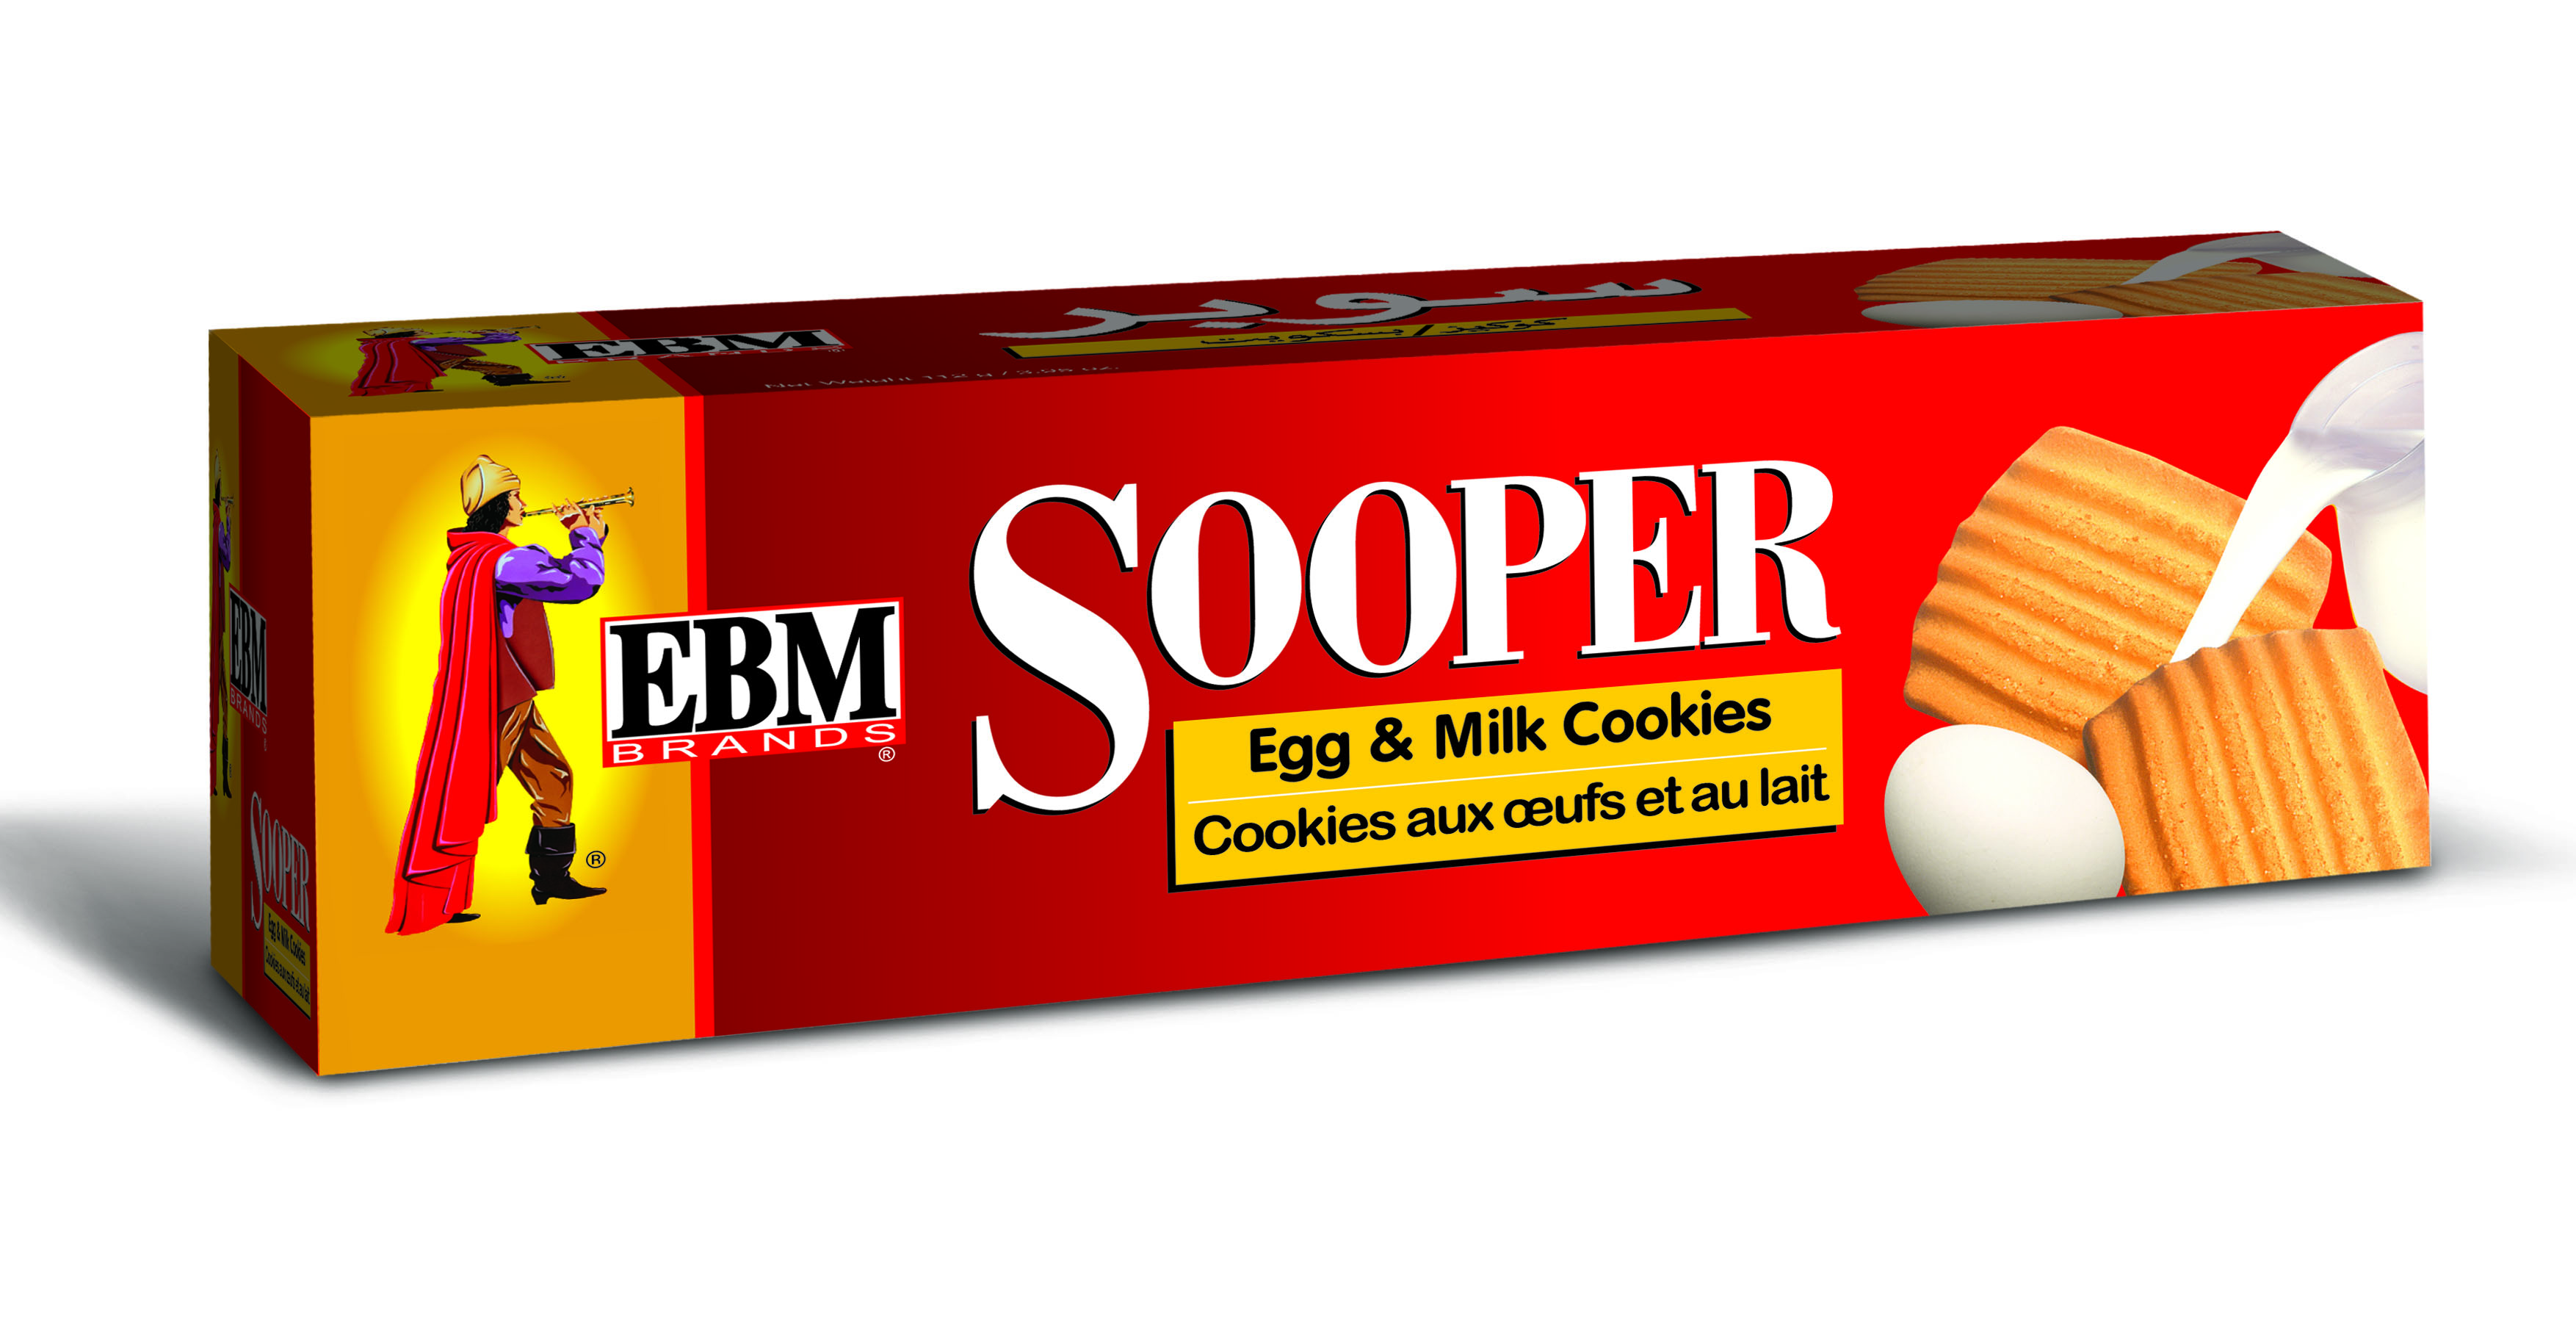 EBM Sooper Export Pack